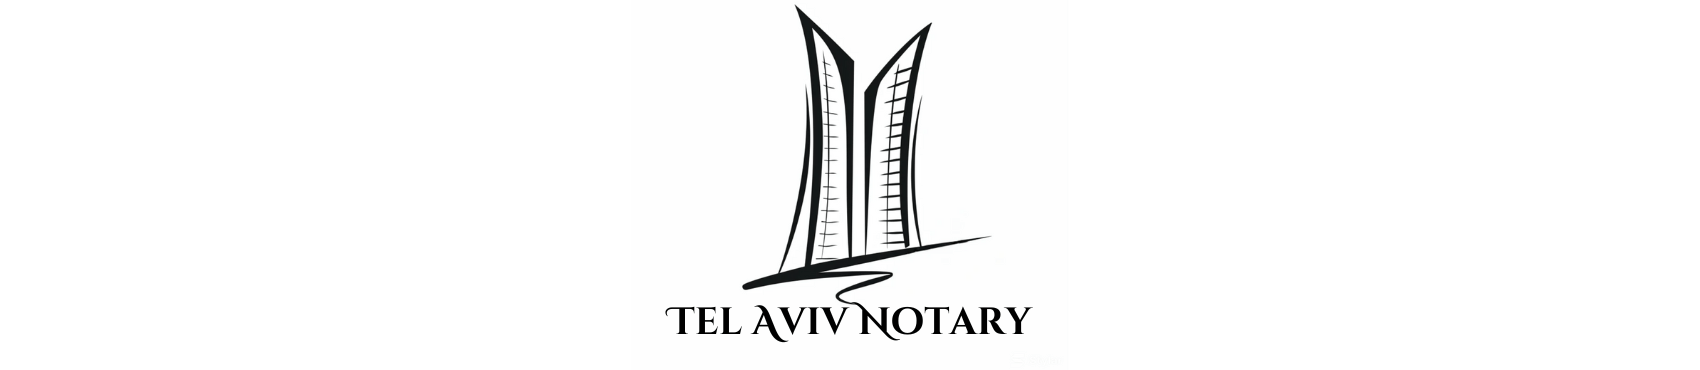 נוטריון בתל אביב : שירותי תרגום נוטריוני, ייפוי כוח והוצאת דרכונים